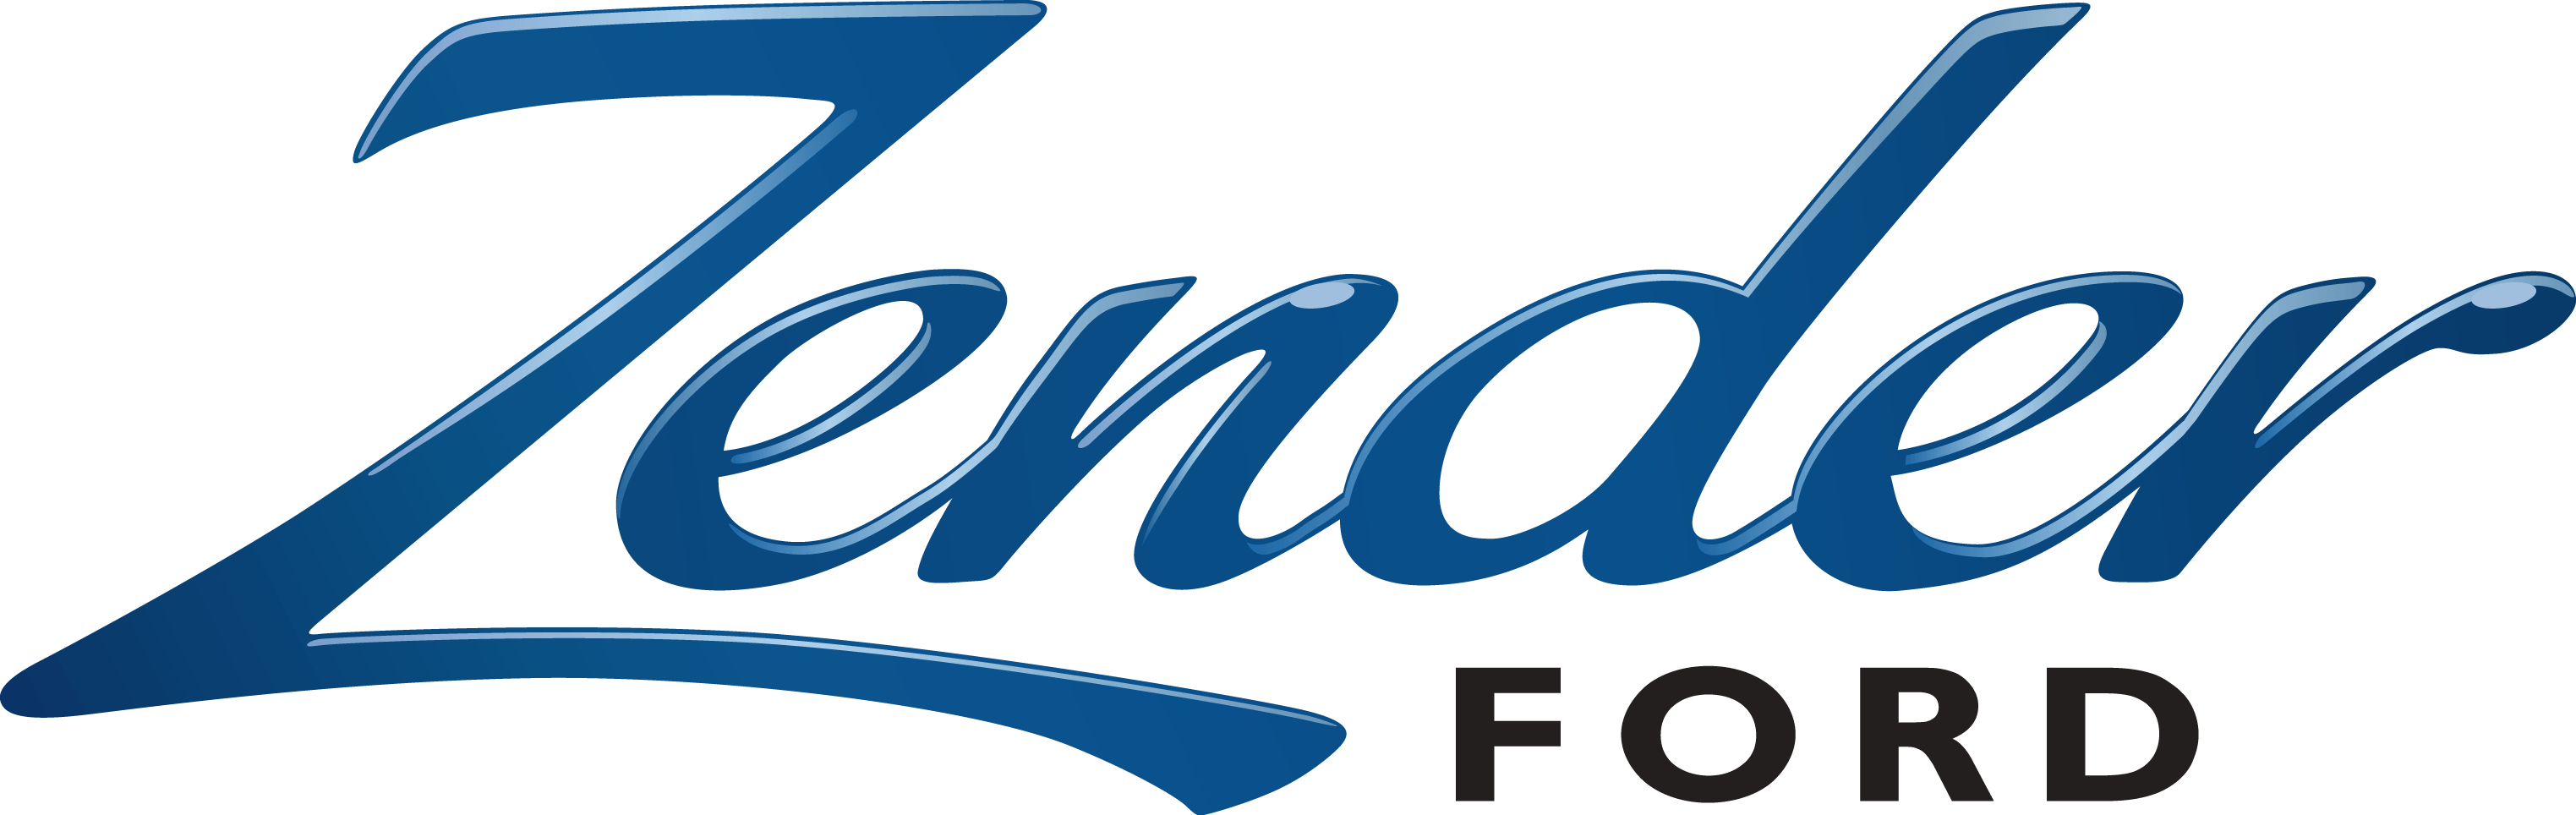 Zender-Ford-Logo_Color